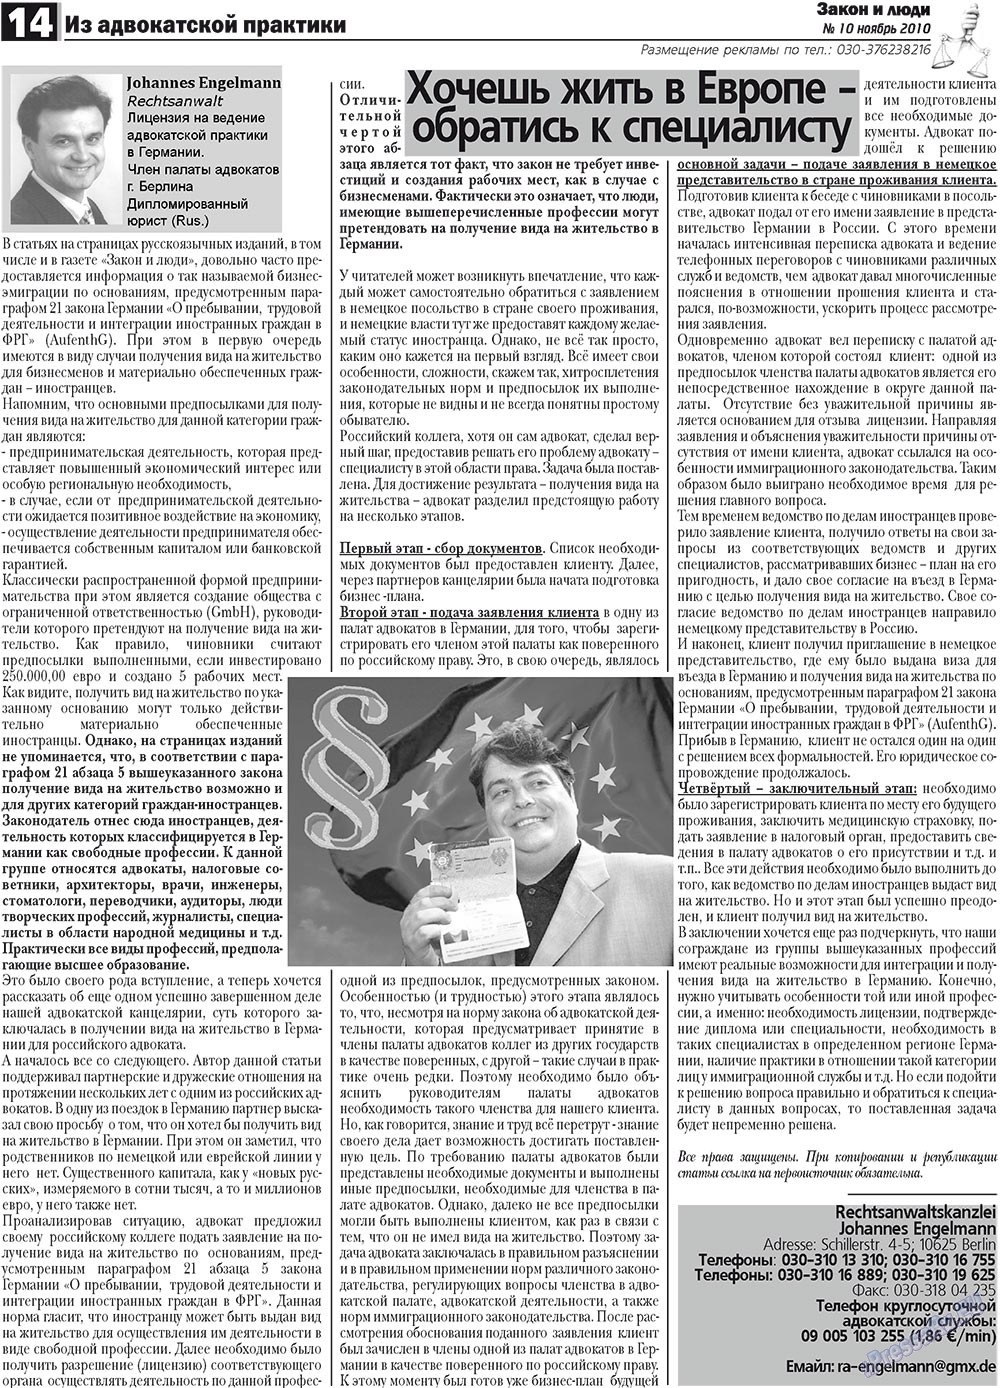 Закон и люди, газета. 2010 №10 стр.14